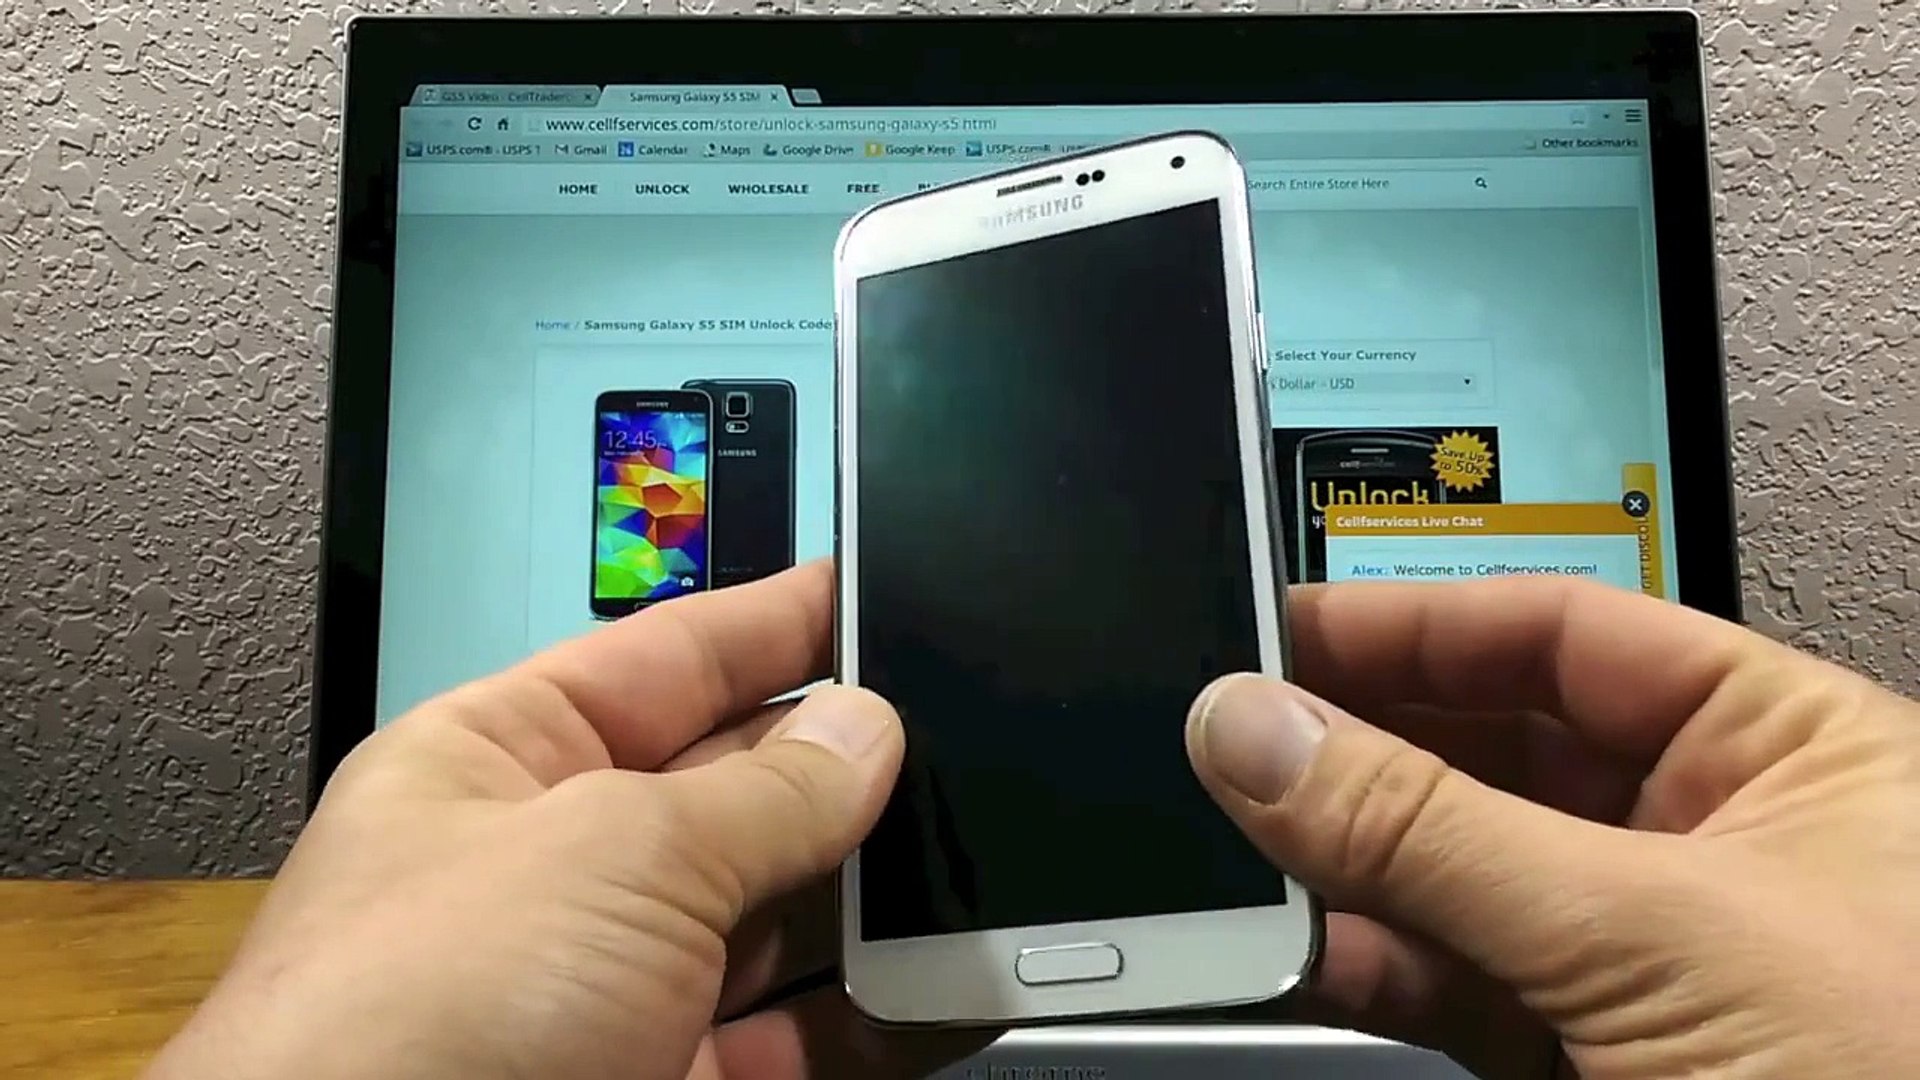 Free Galaxy S3 Mini Unlock Code